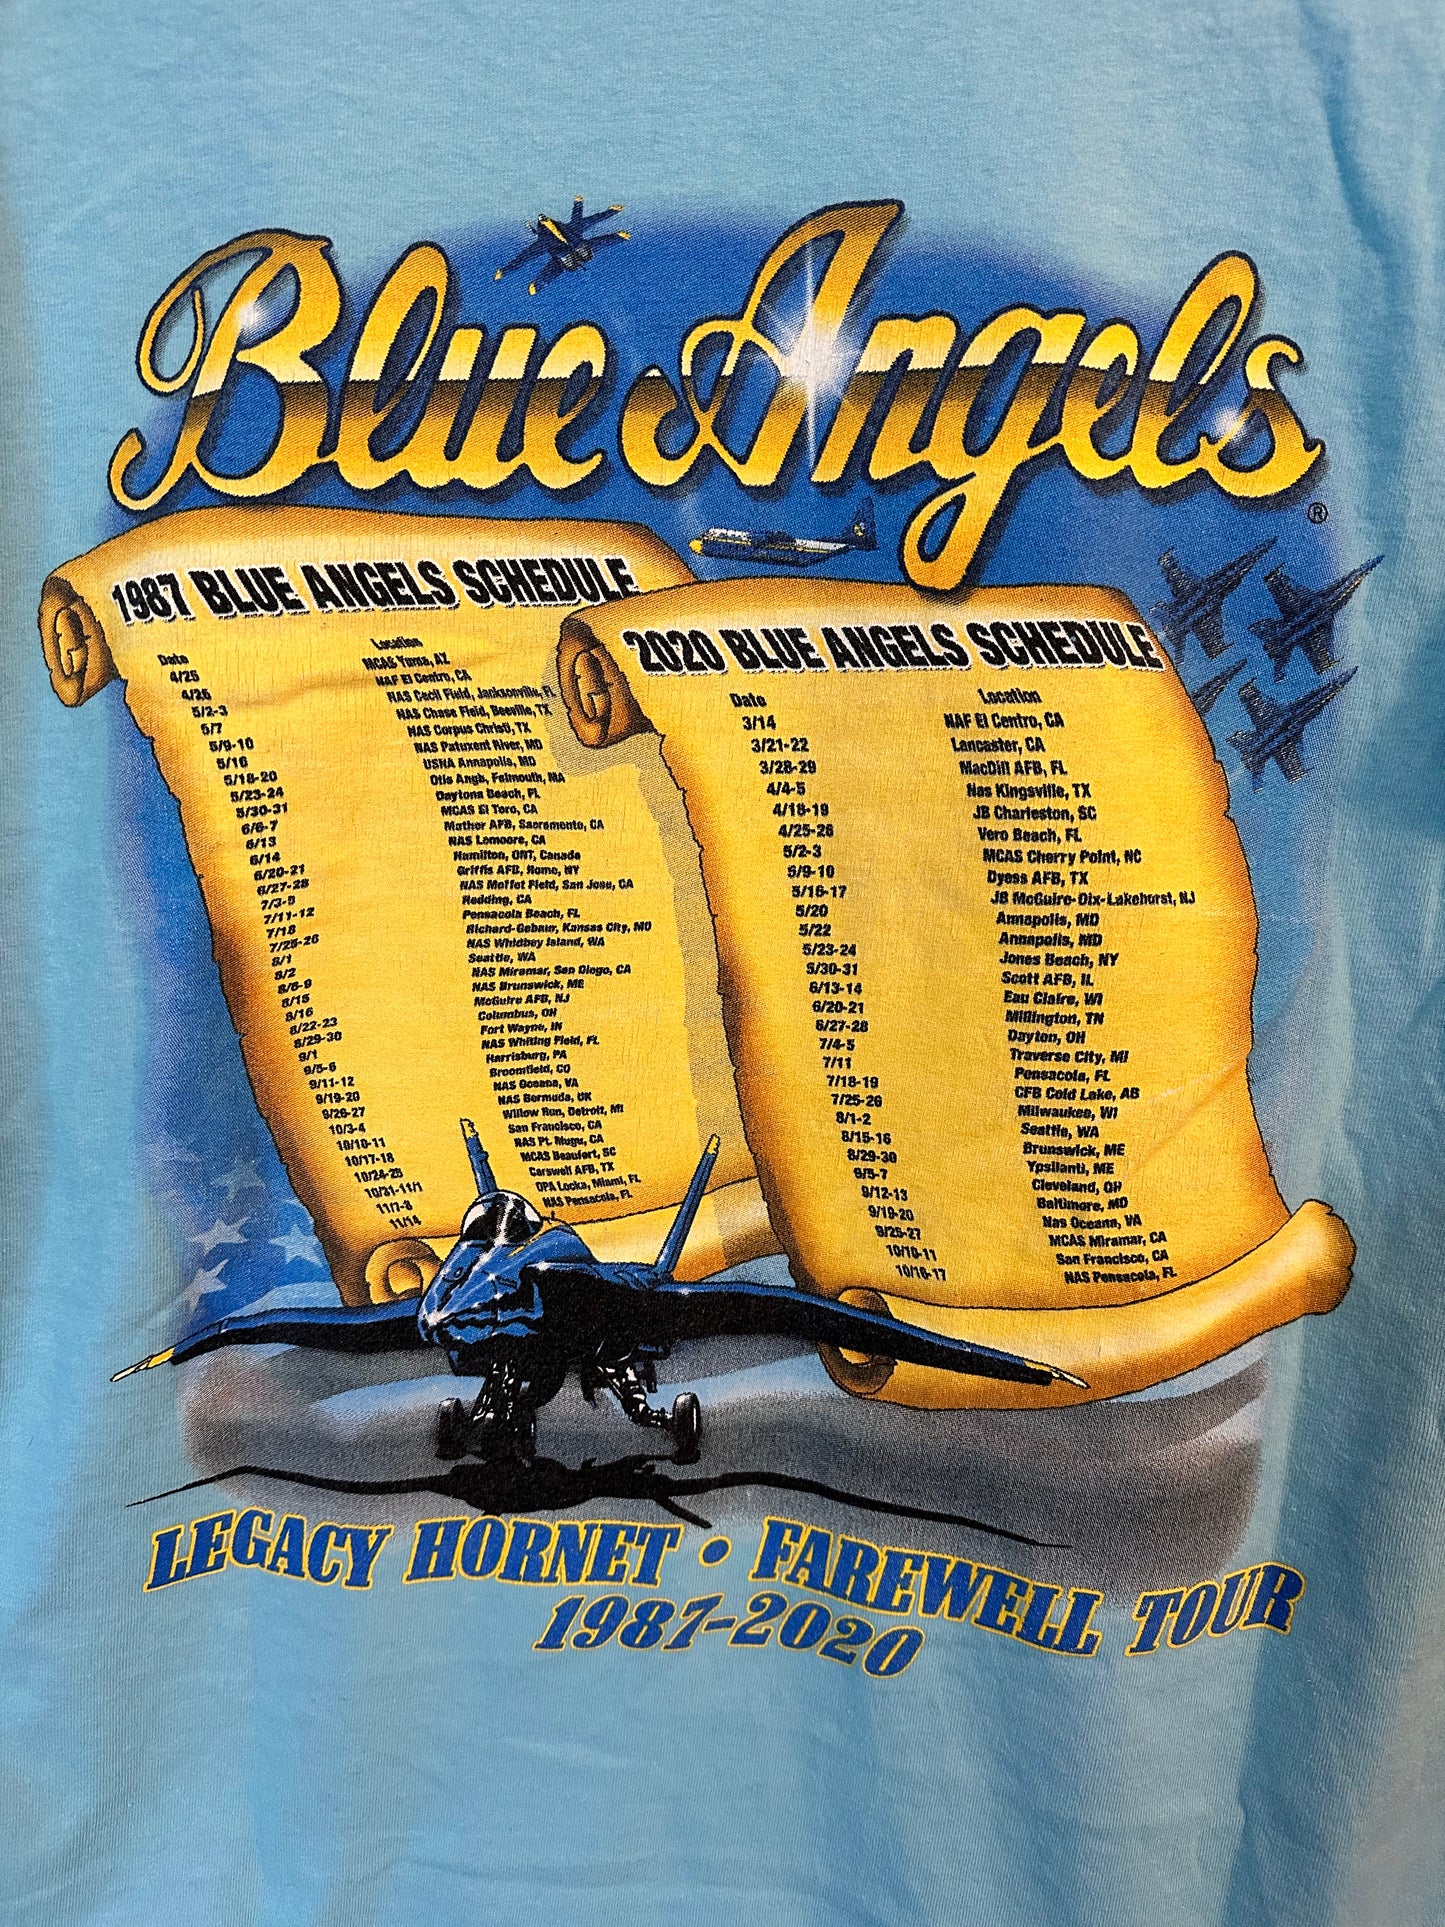 Blauwe engelen verjaardag T-shirt